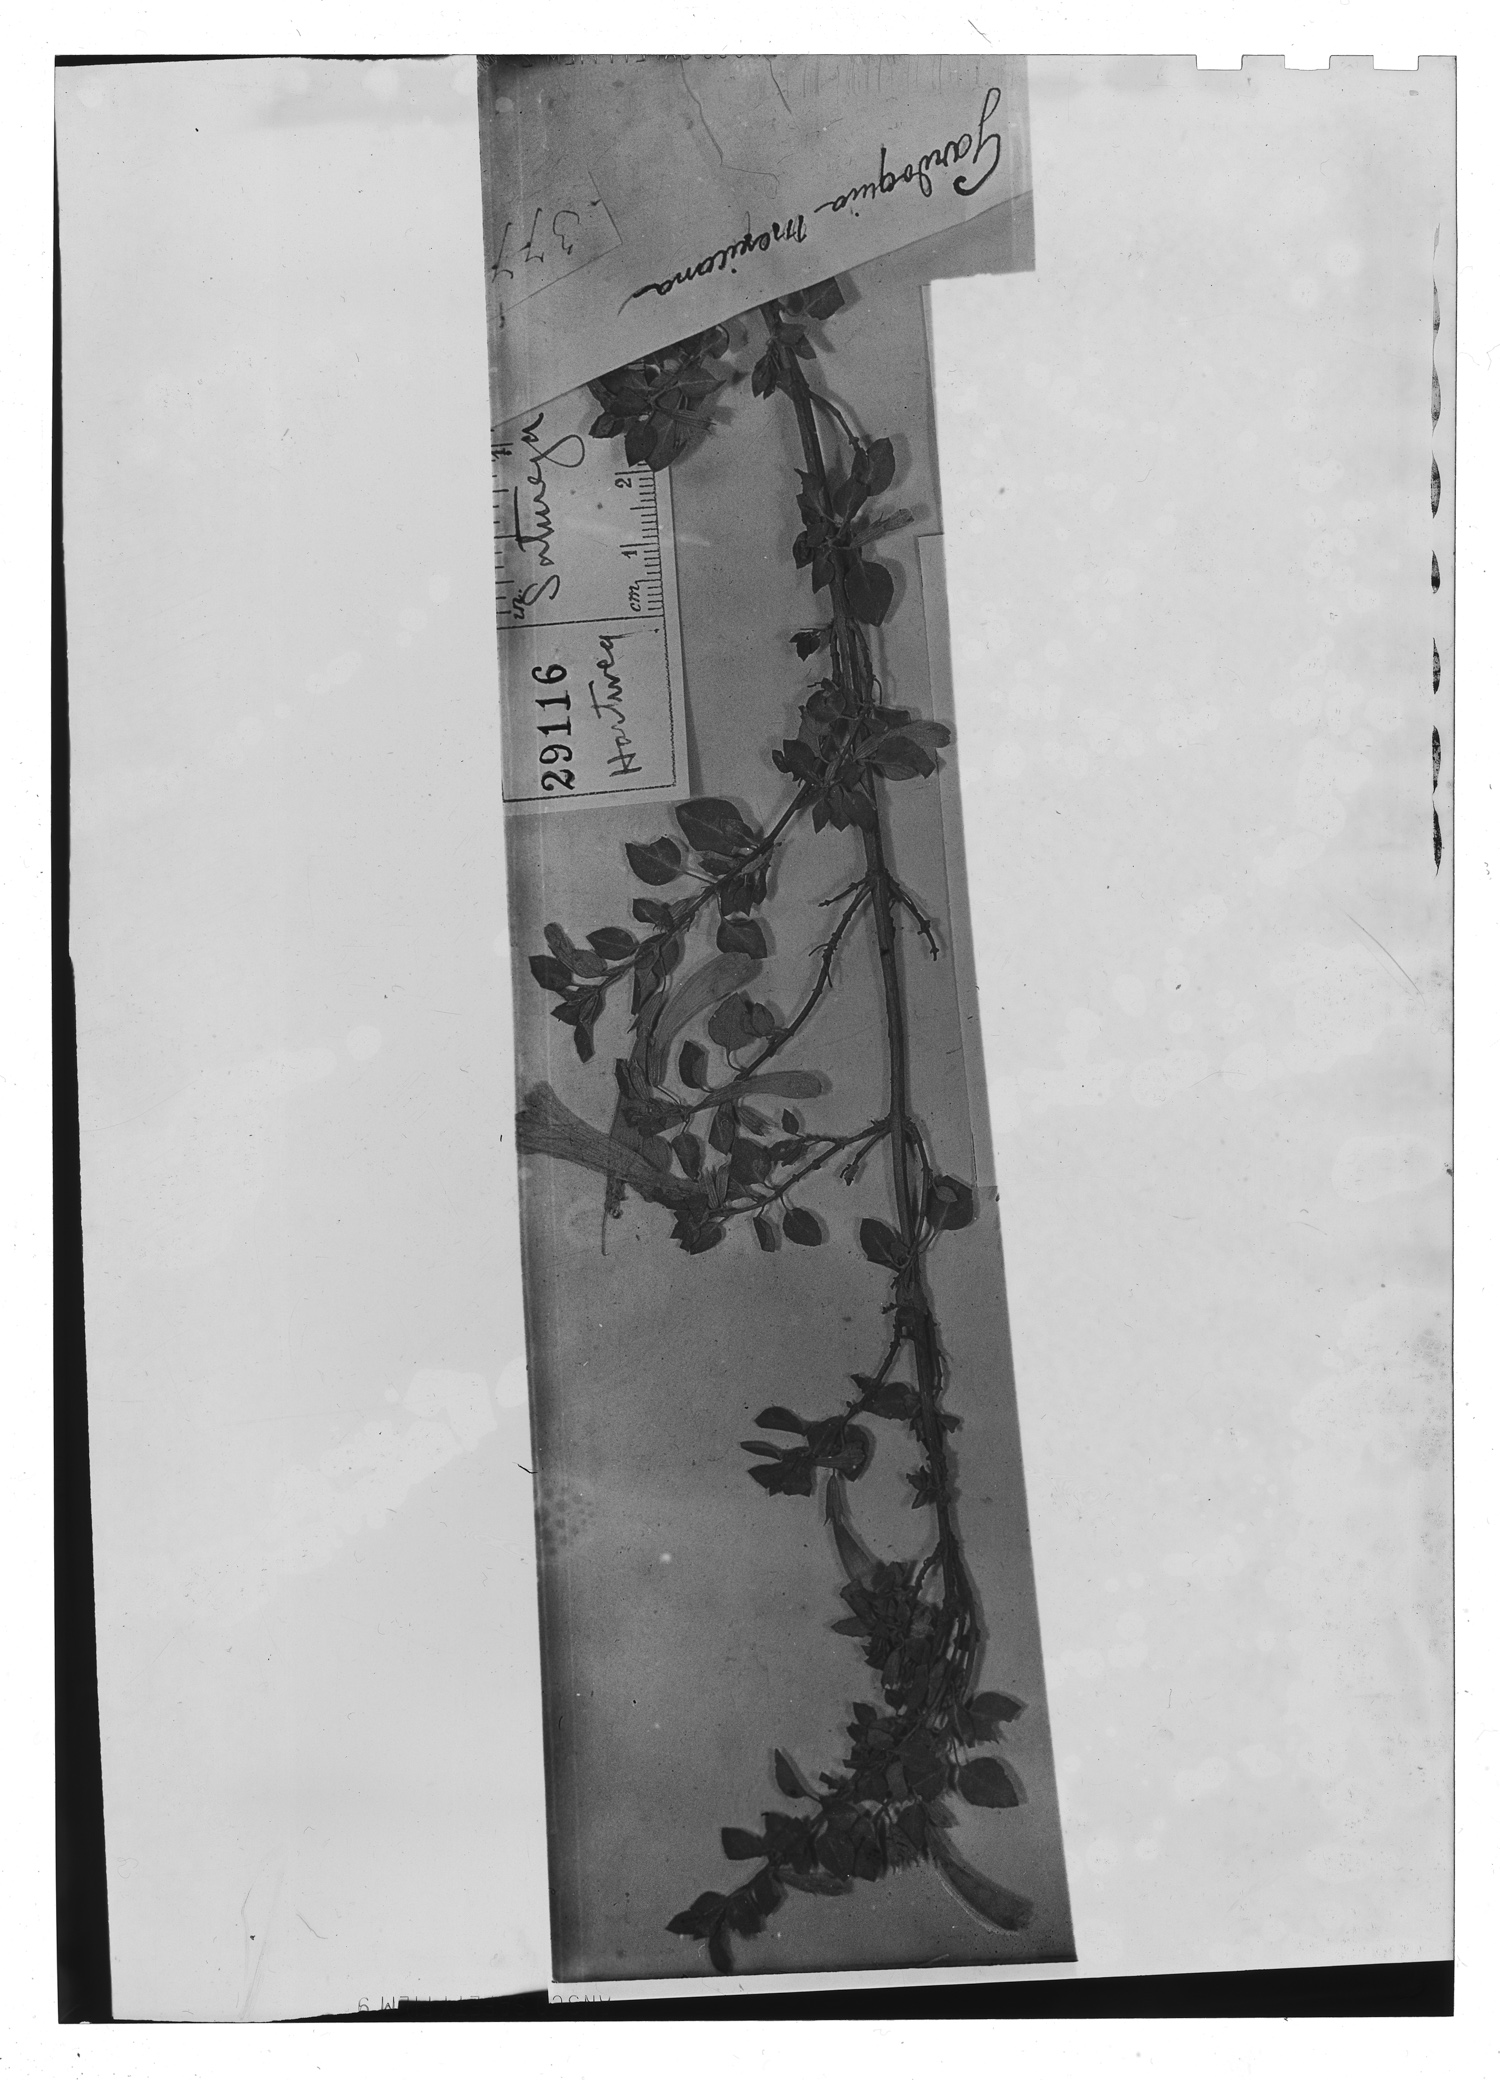 Clinopodium mexicanum image